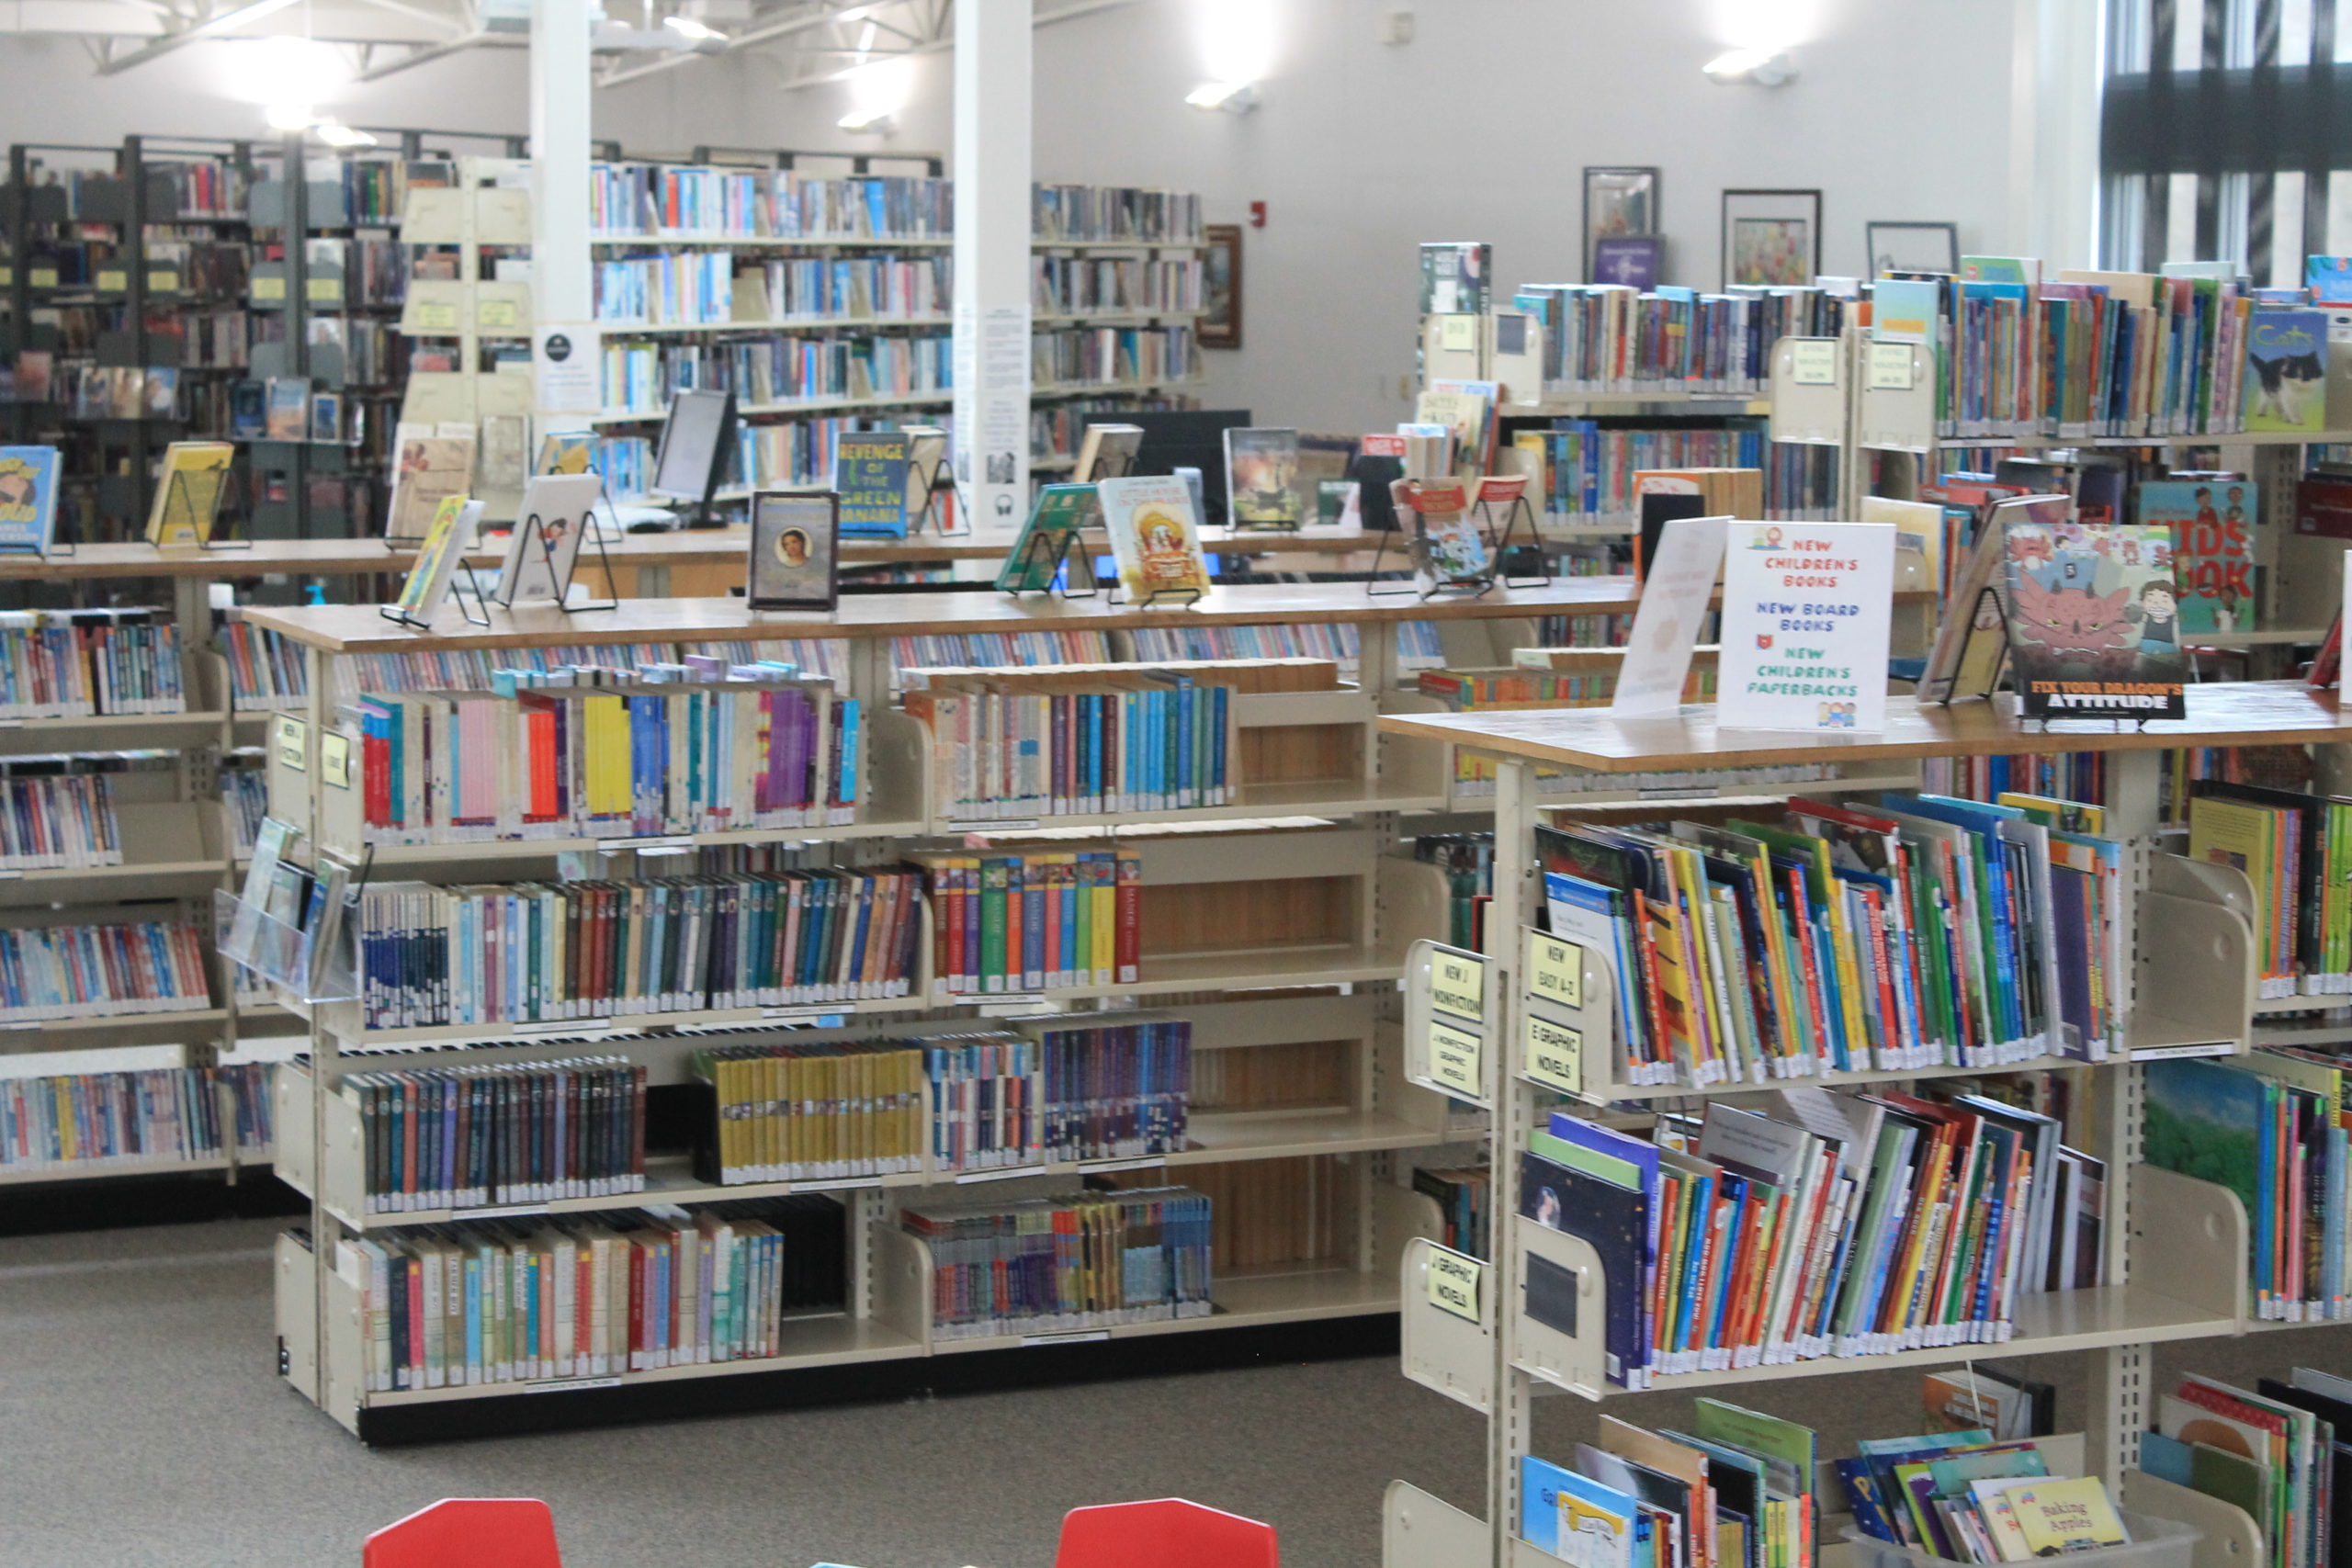 Shelves full of books inside Henderson County Library